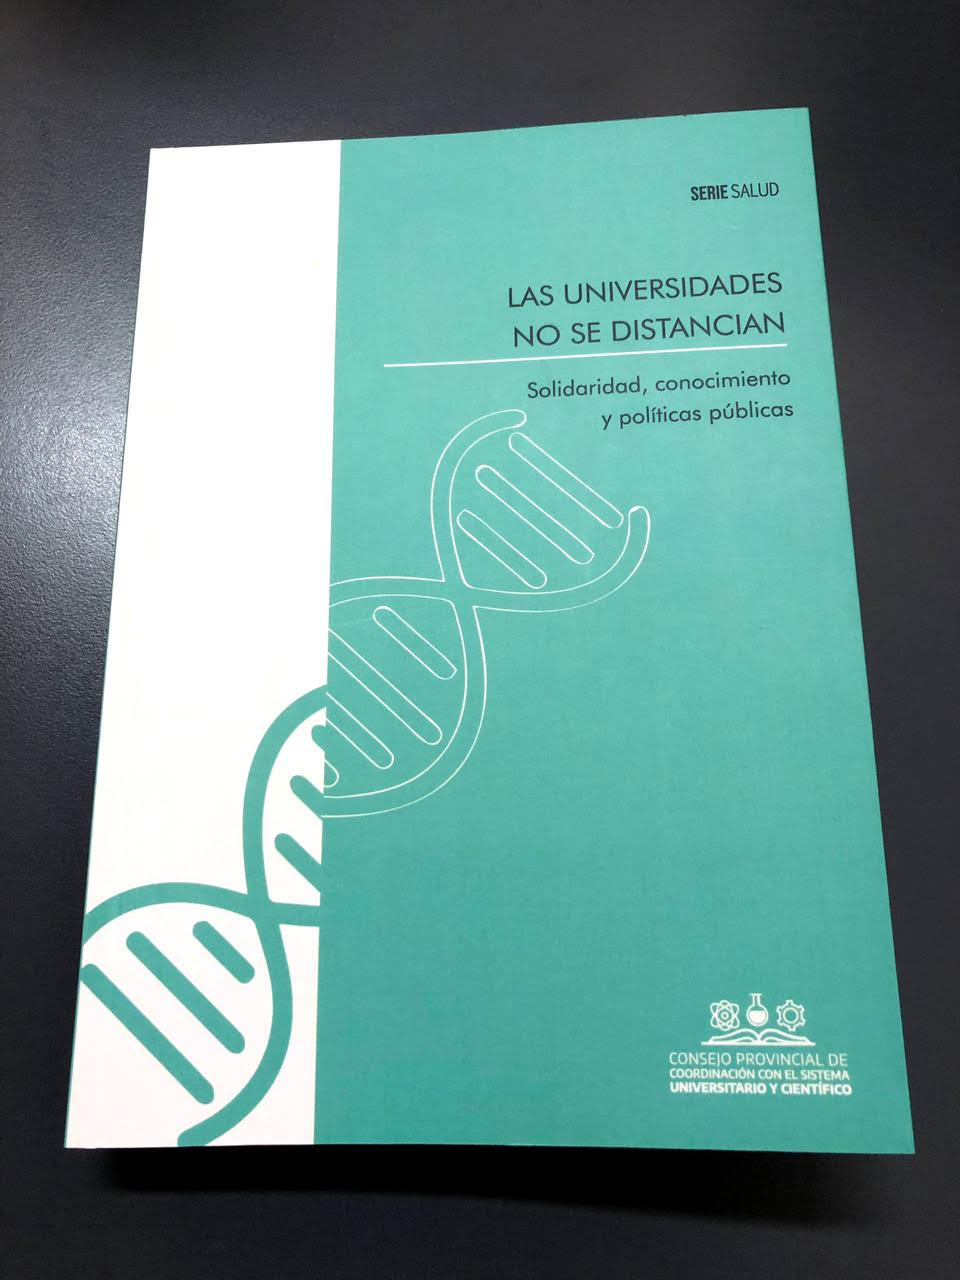 La UNLP editó el libro “Las universidades no se distancian”, del Consejo Universitario provincial